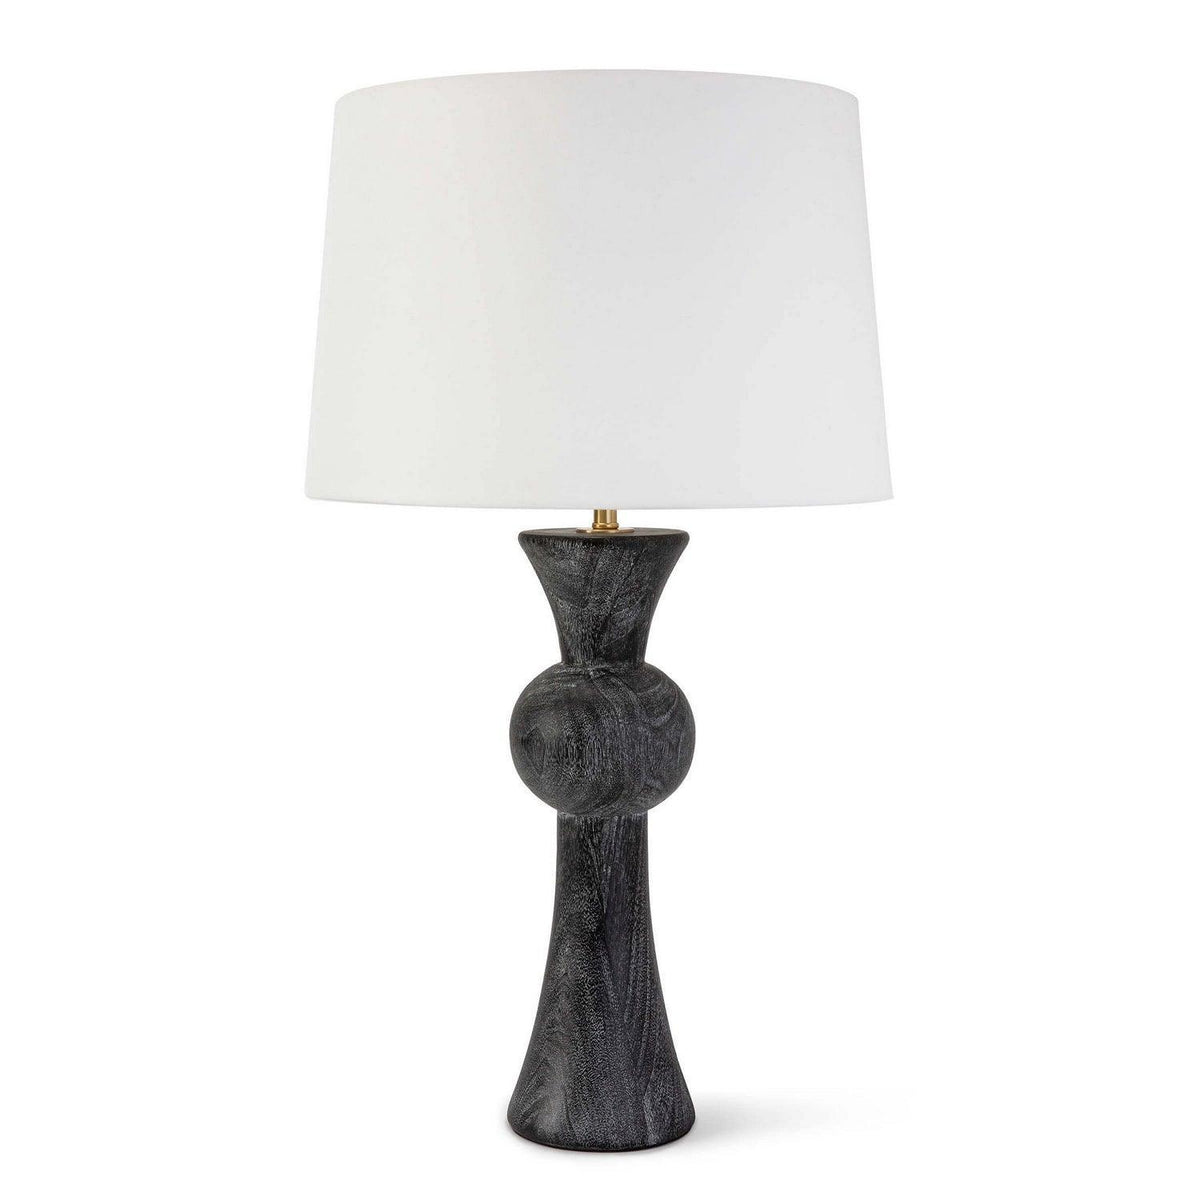 Regina Andrew - Vaughn Table Lamp - 13-1426 | Montreal Lighting & Hardware